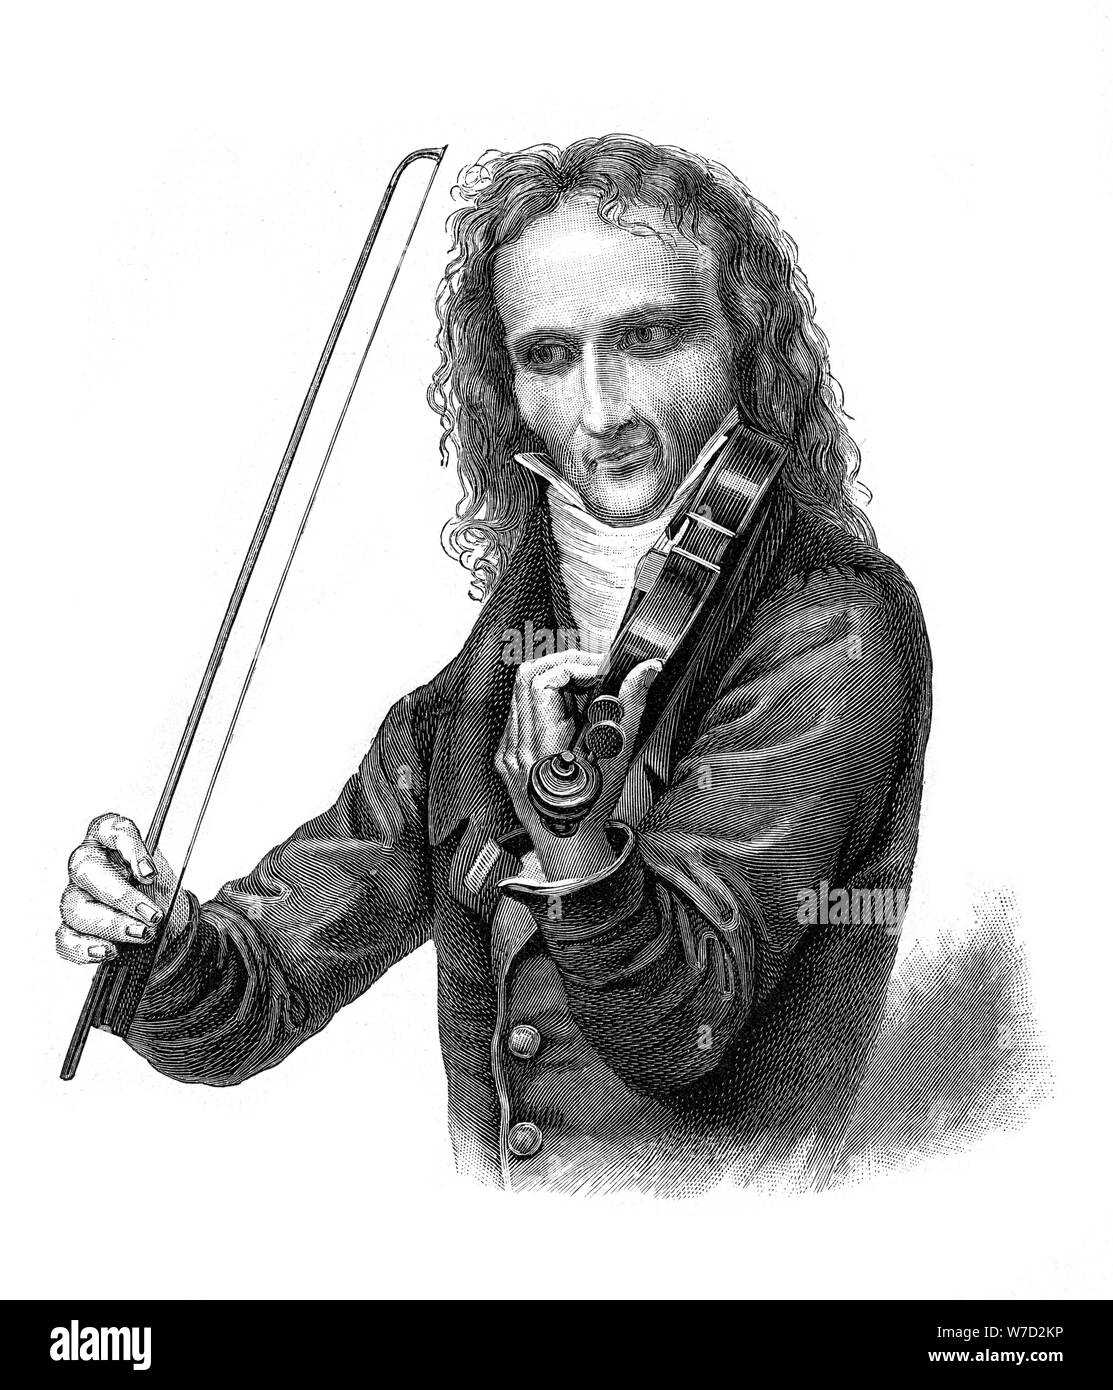 Nicolo Paganini, 19th century Italian violinist, violist, guitarist and composer, (1900). Artist: Unknown Stock Photo